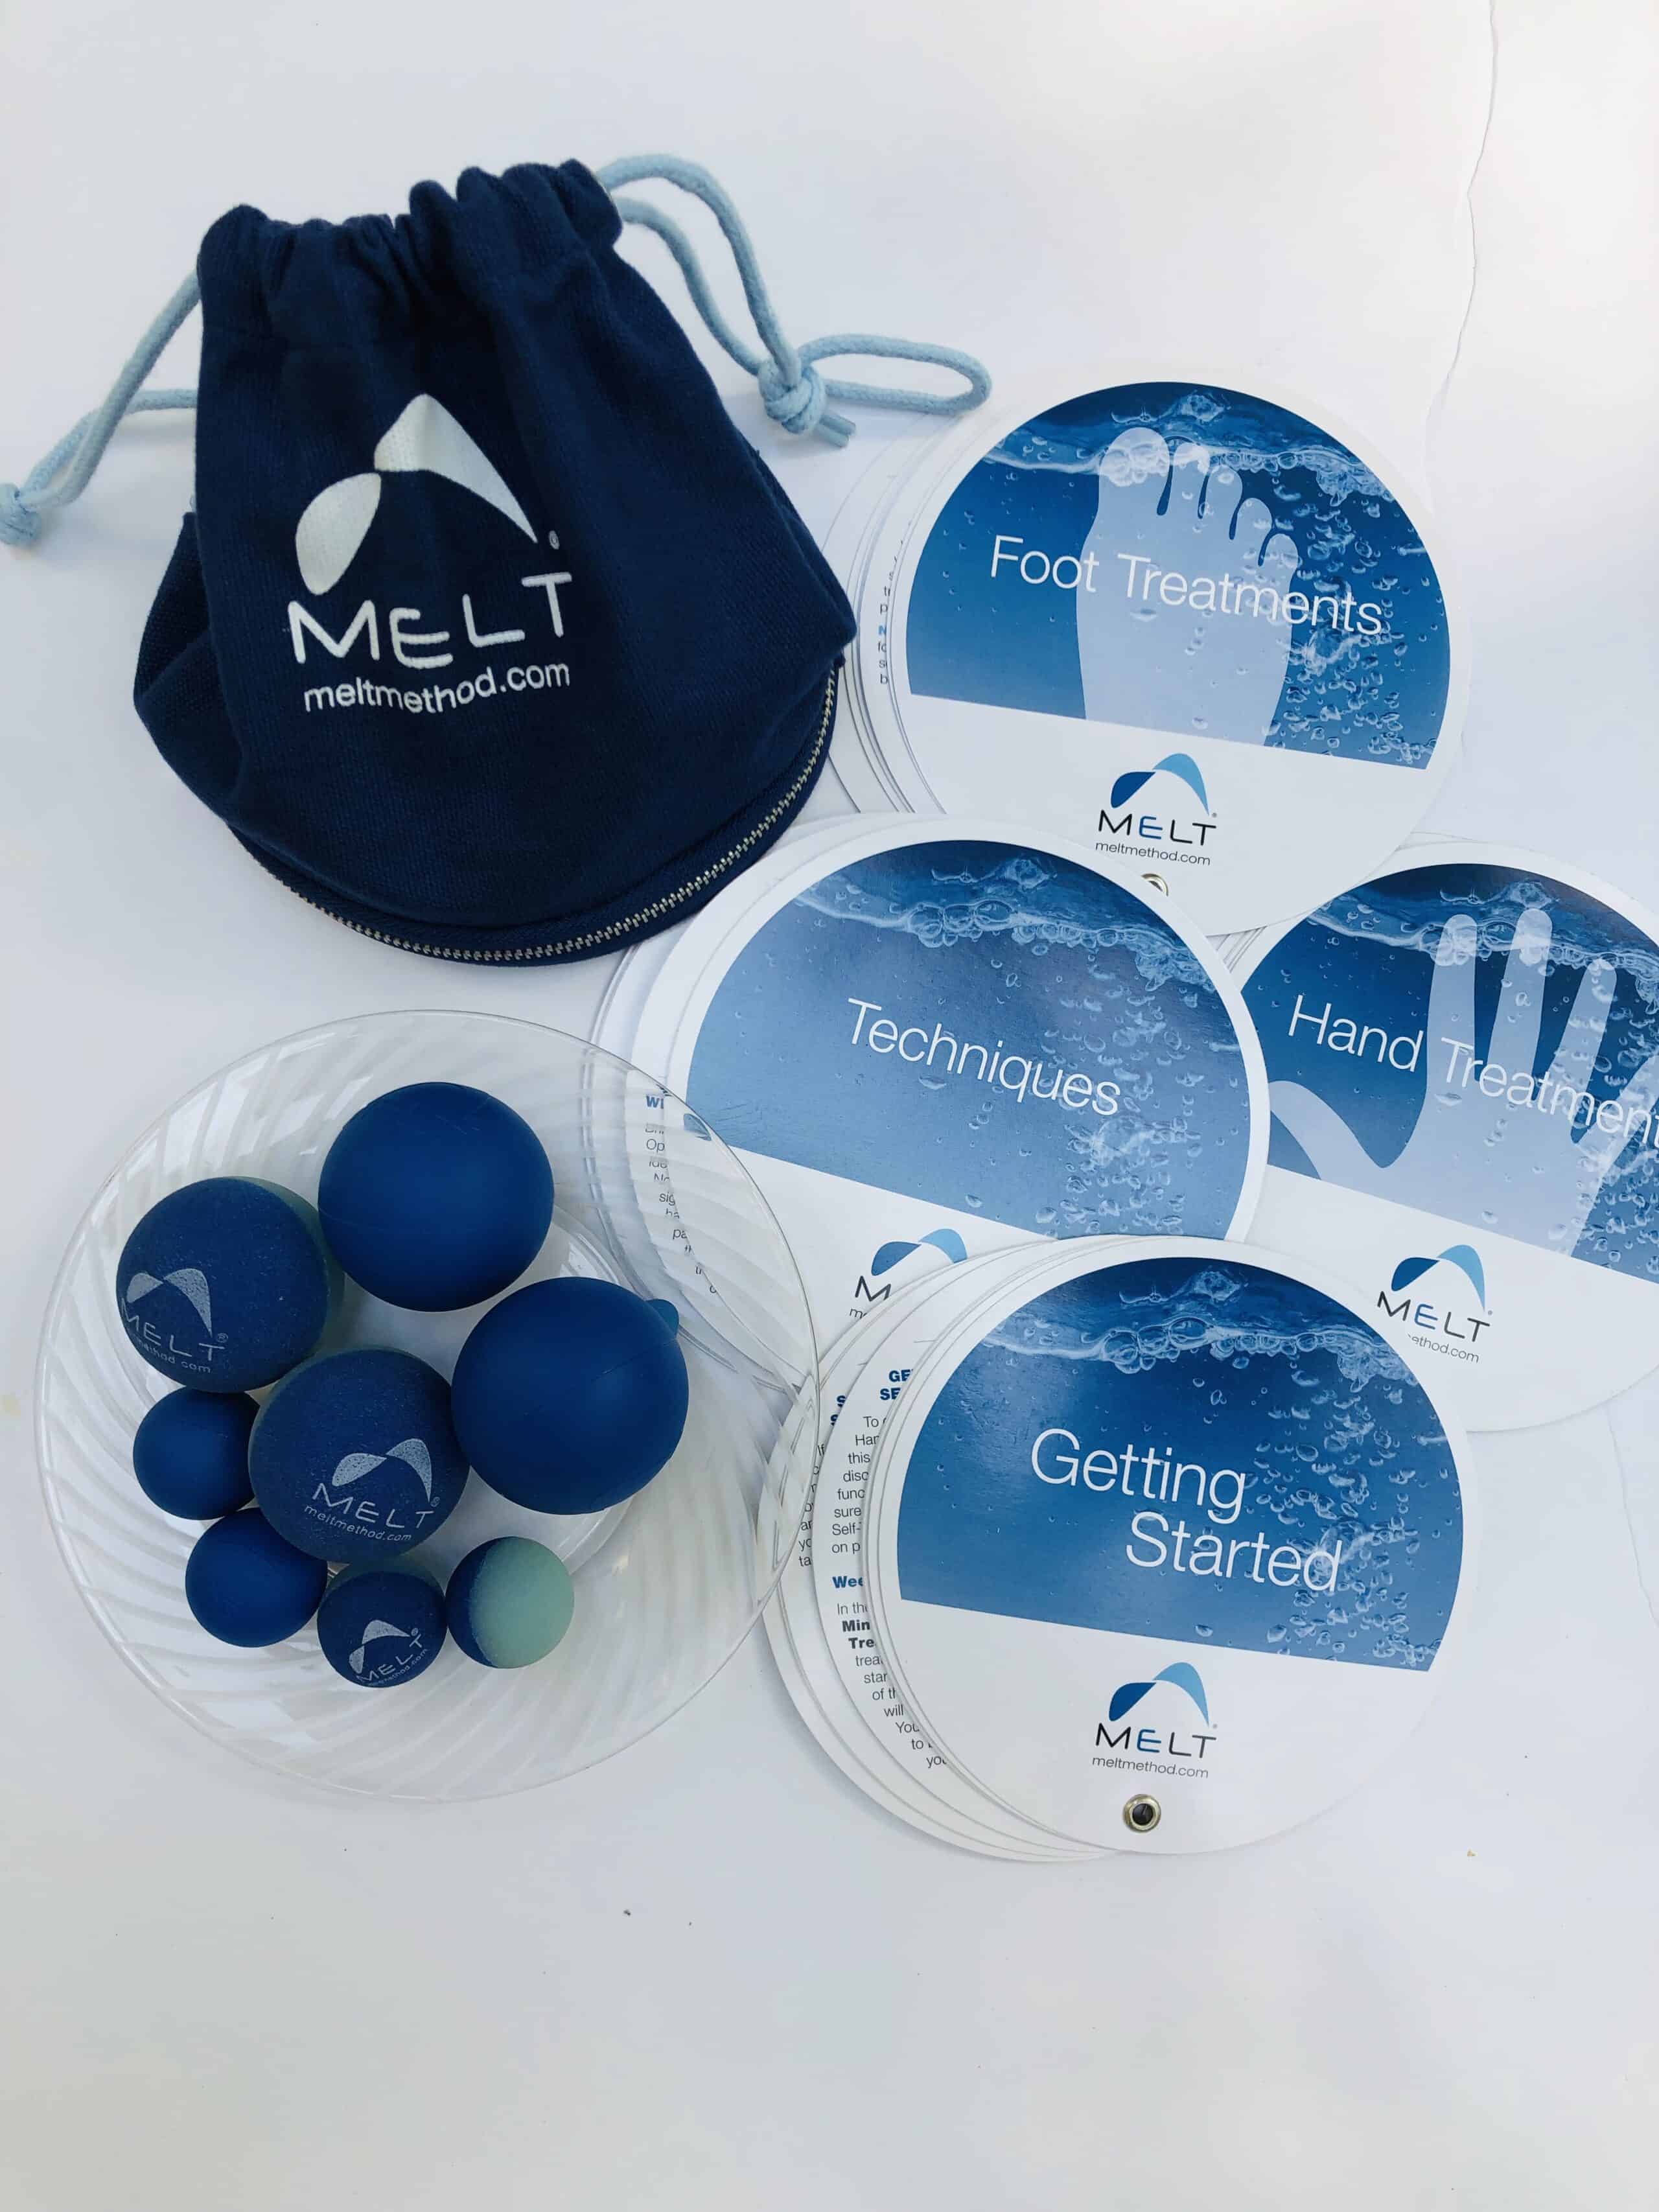 What is MELT? - MELT Method